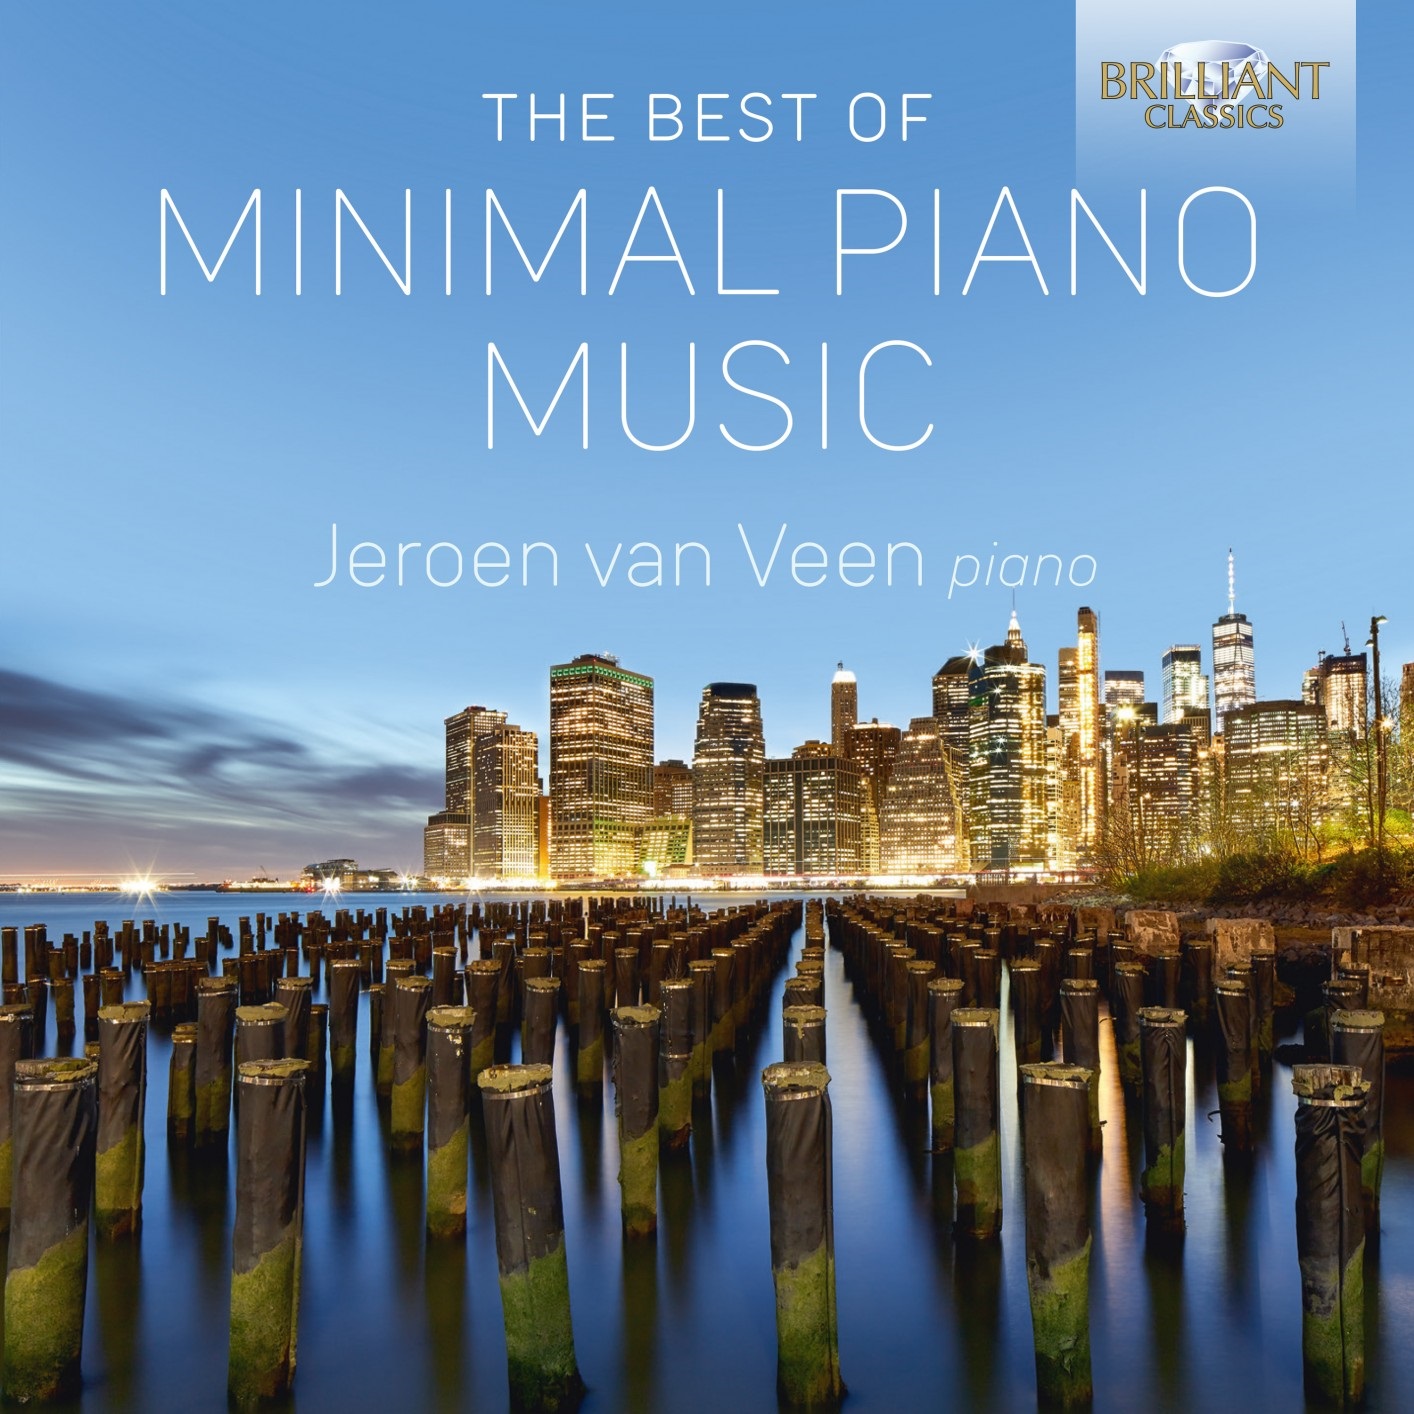 Jeroen van Veen - The Best of Minimal Piano Music (2020) [FLAC 24bit/48kHz]